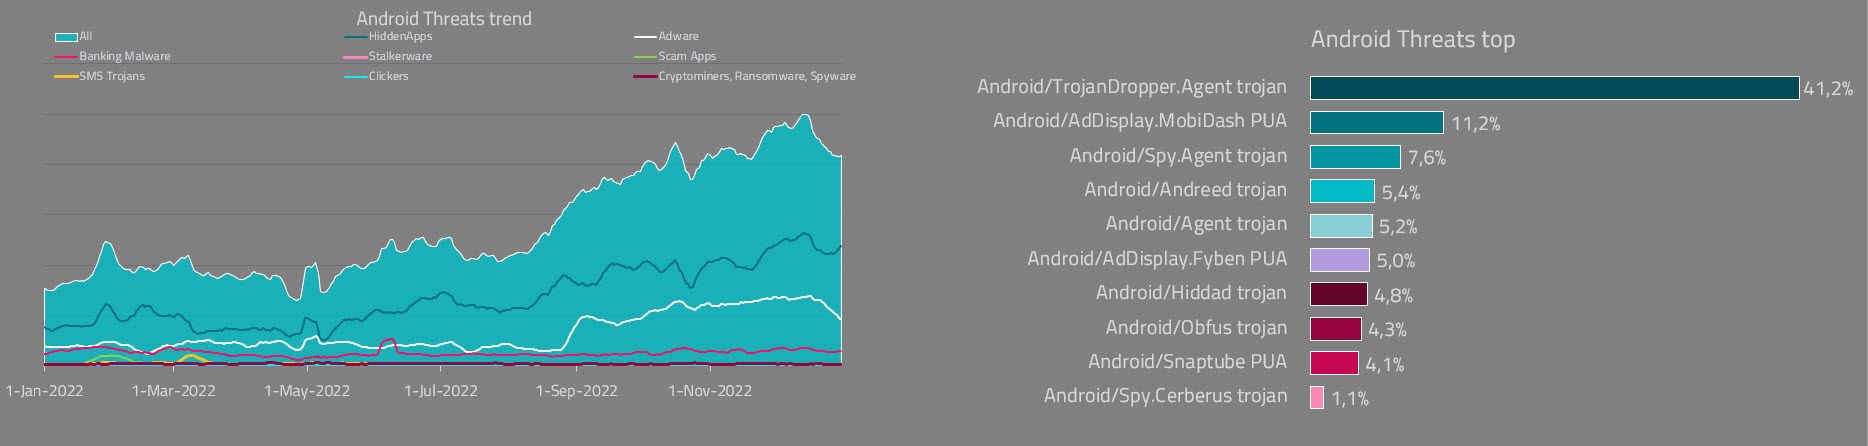 Aumento das detecções de ameaças para Android na América Latina durante os últimos quatro meses de 2022.